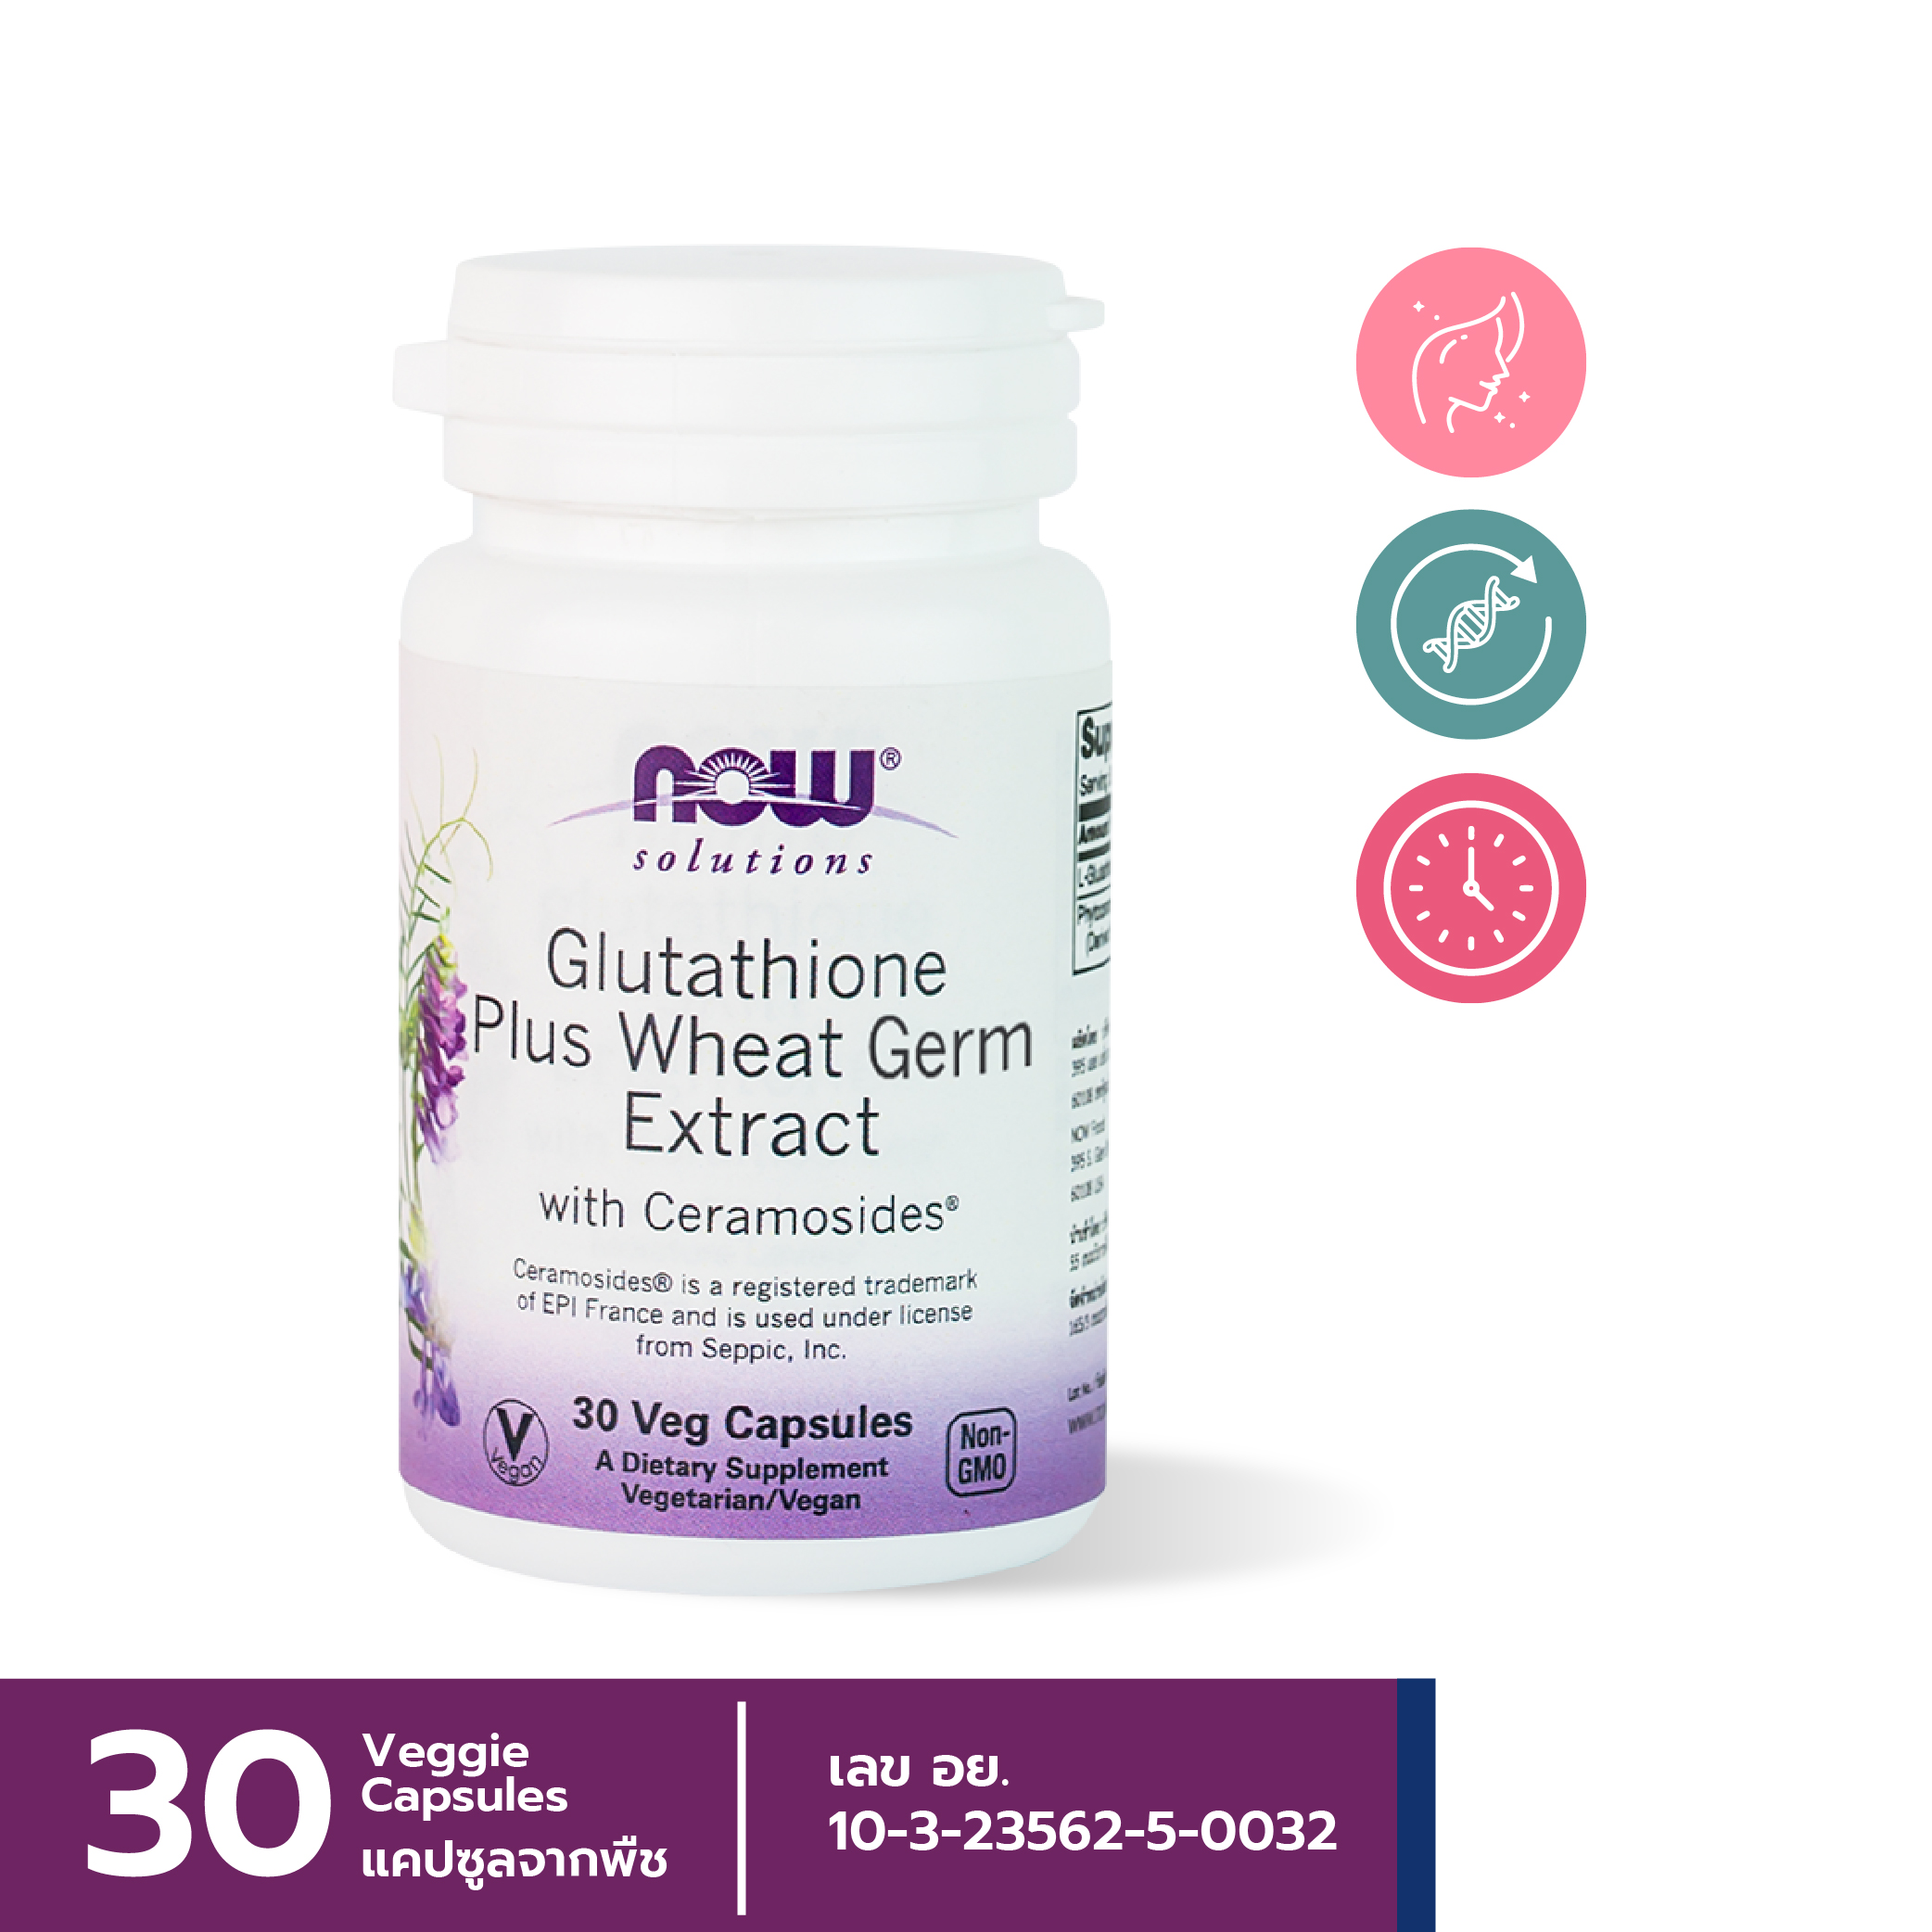 [ลูกค้าใหม่กรอก FORYOU89 ลดเลย 89.-] NOW Glutathione Plus Wheat Germ Extract (30 Veg Capsules)